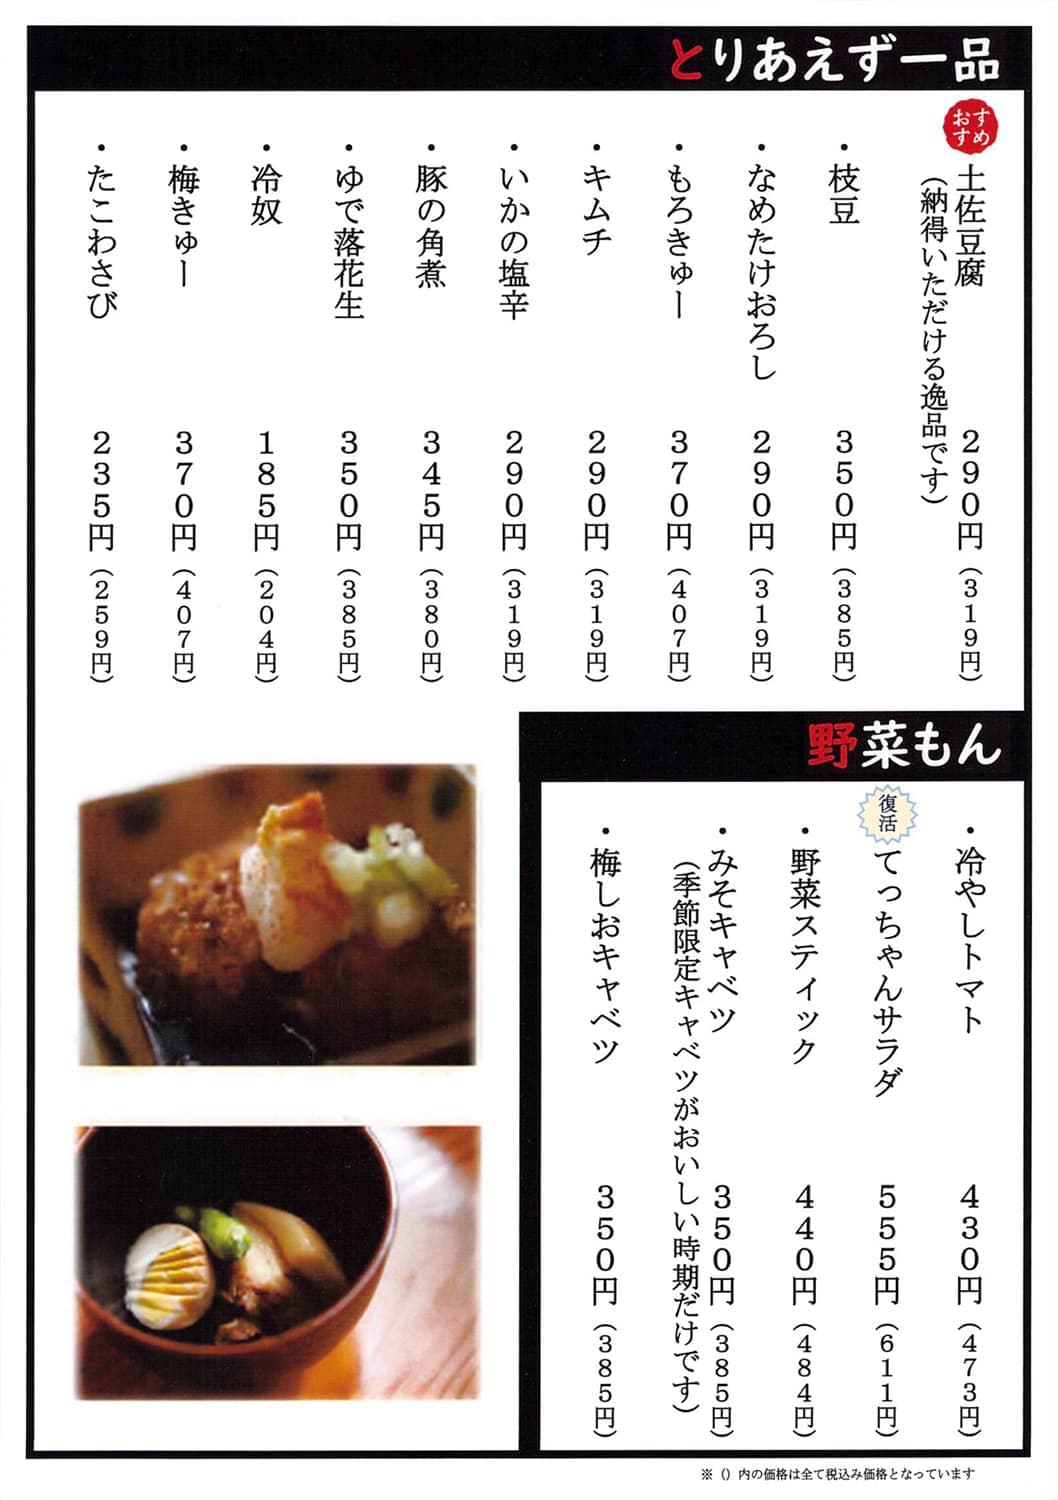 てっちゃんのメニュー｜焼とりてっちゃん｜中華食堂 てっちゃんは、静岡県三島市の三島駅前と裾野市にあるテイクアウトもできる居酒屋｜焼きとり、串焼き屋、中華料理屋です。